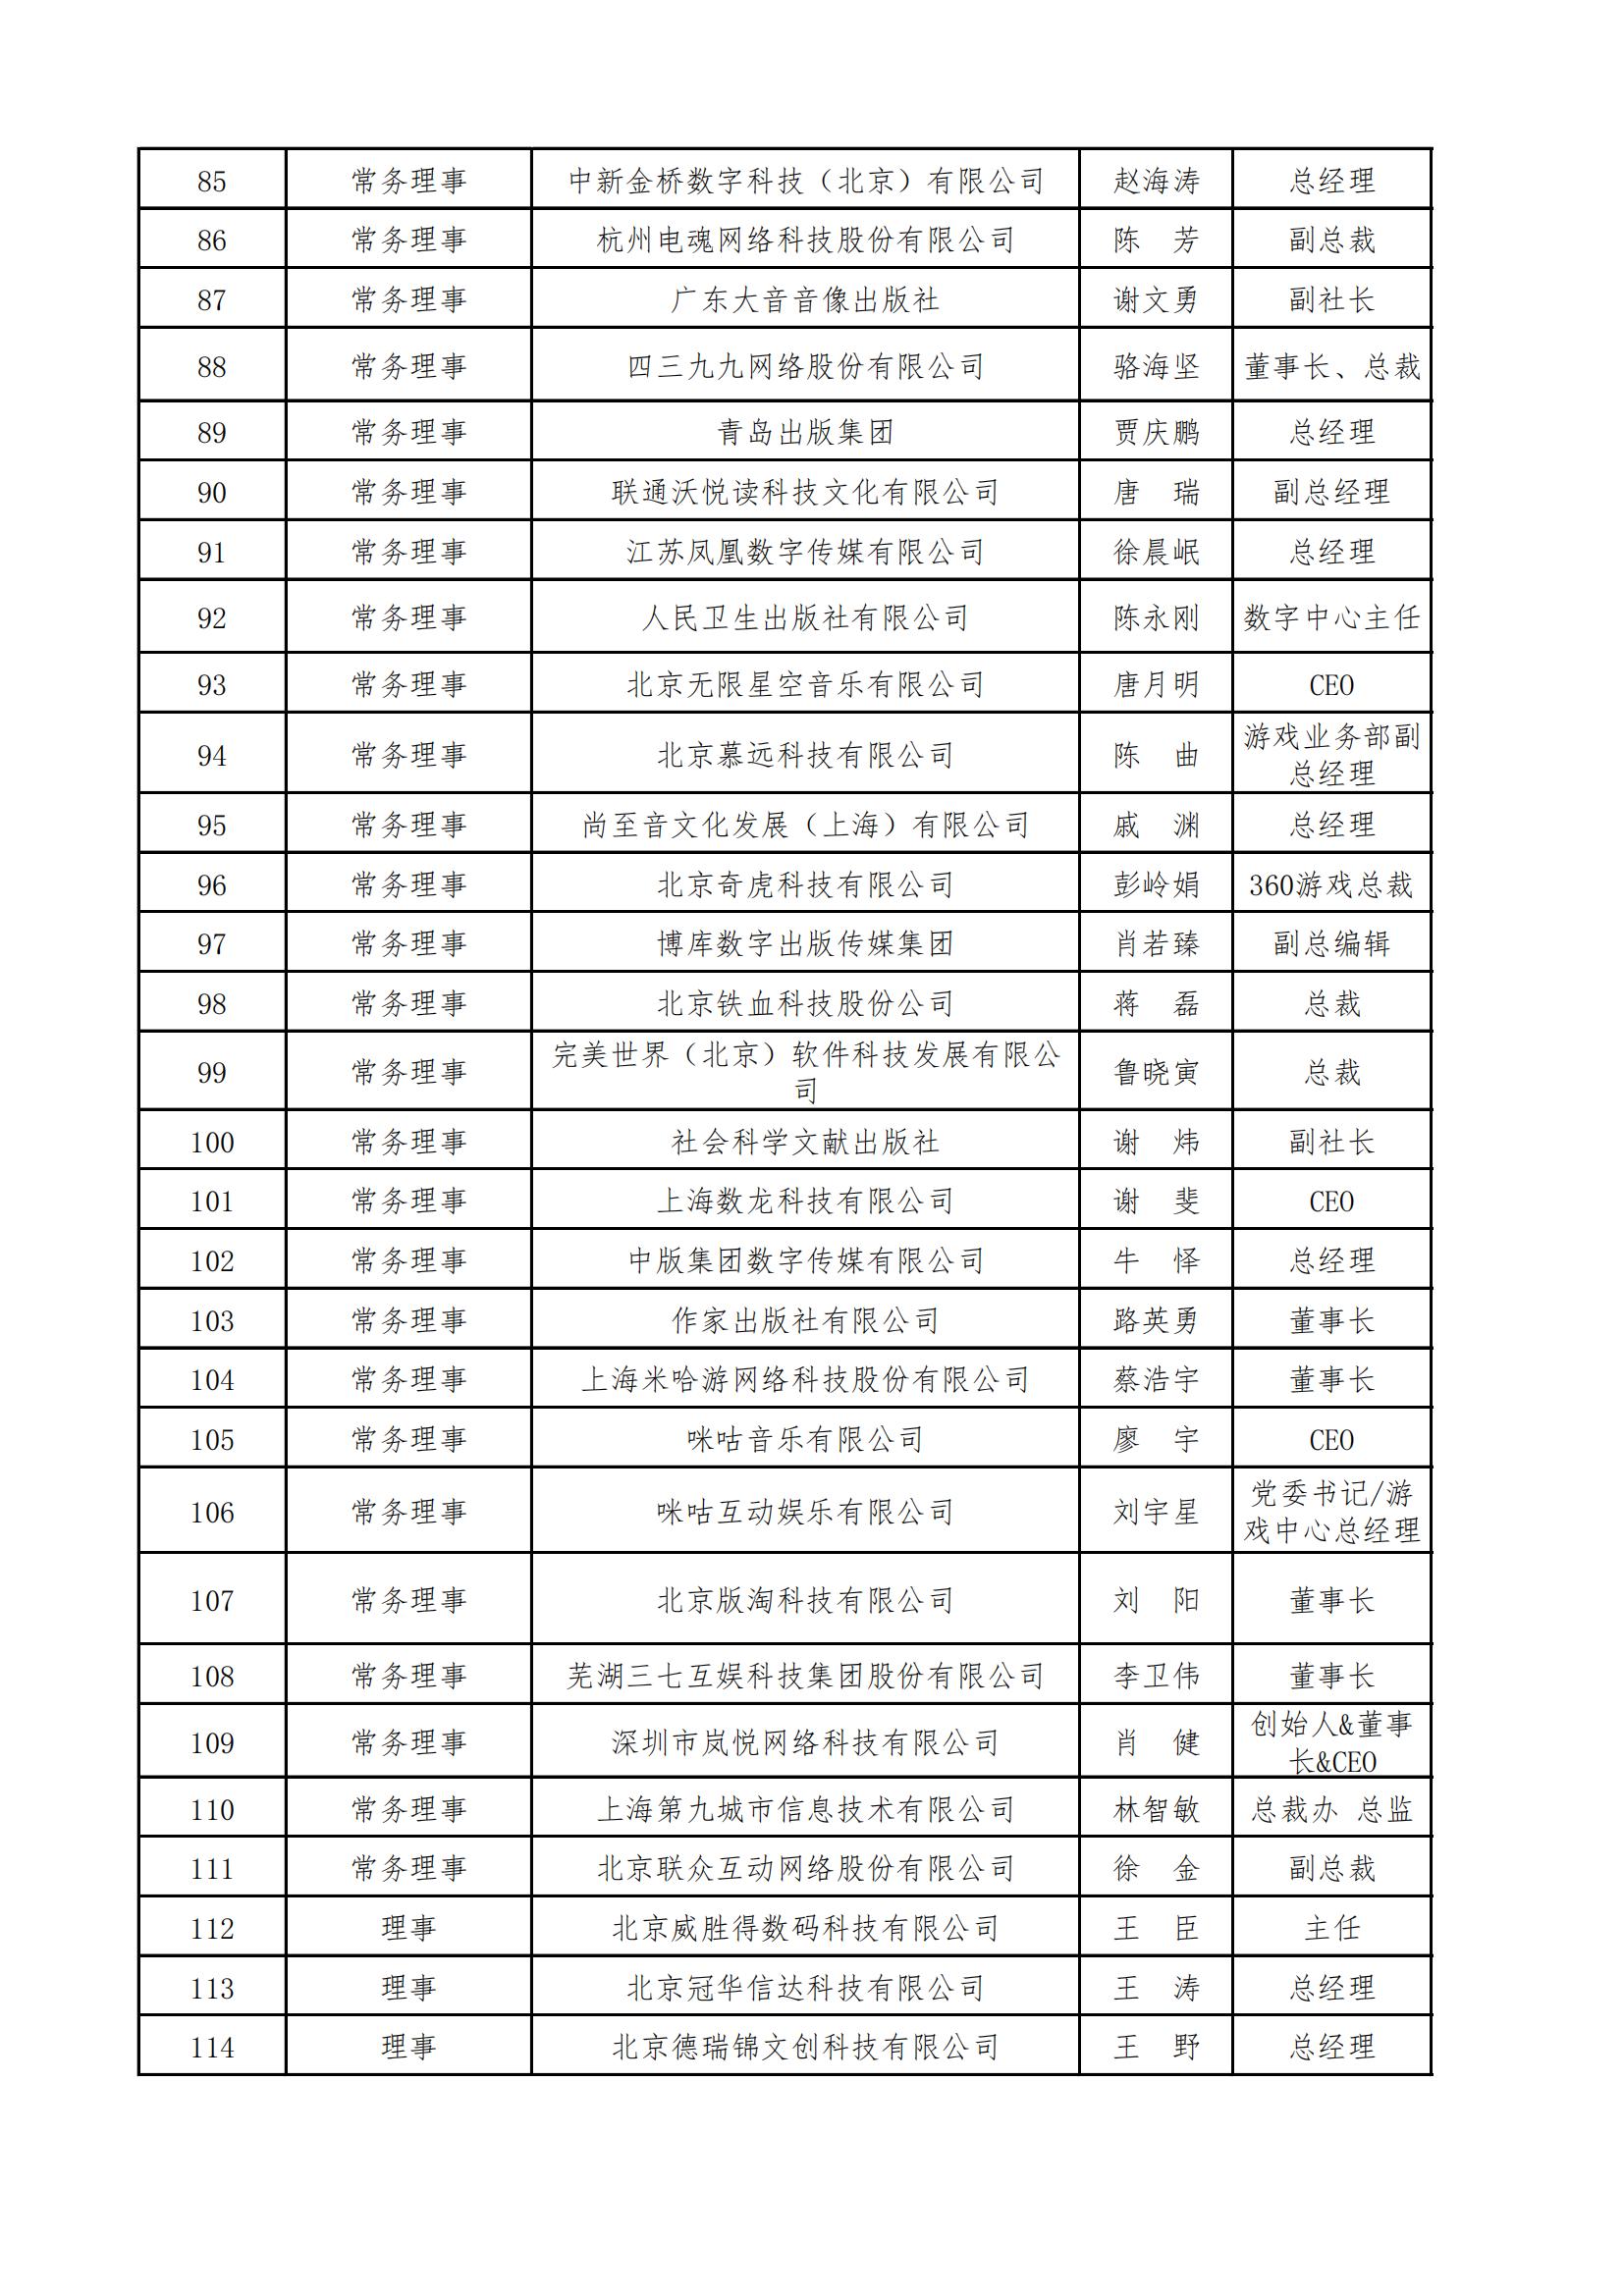 中國音像與數字出版協會第五屆理事會名錄_03.jpg